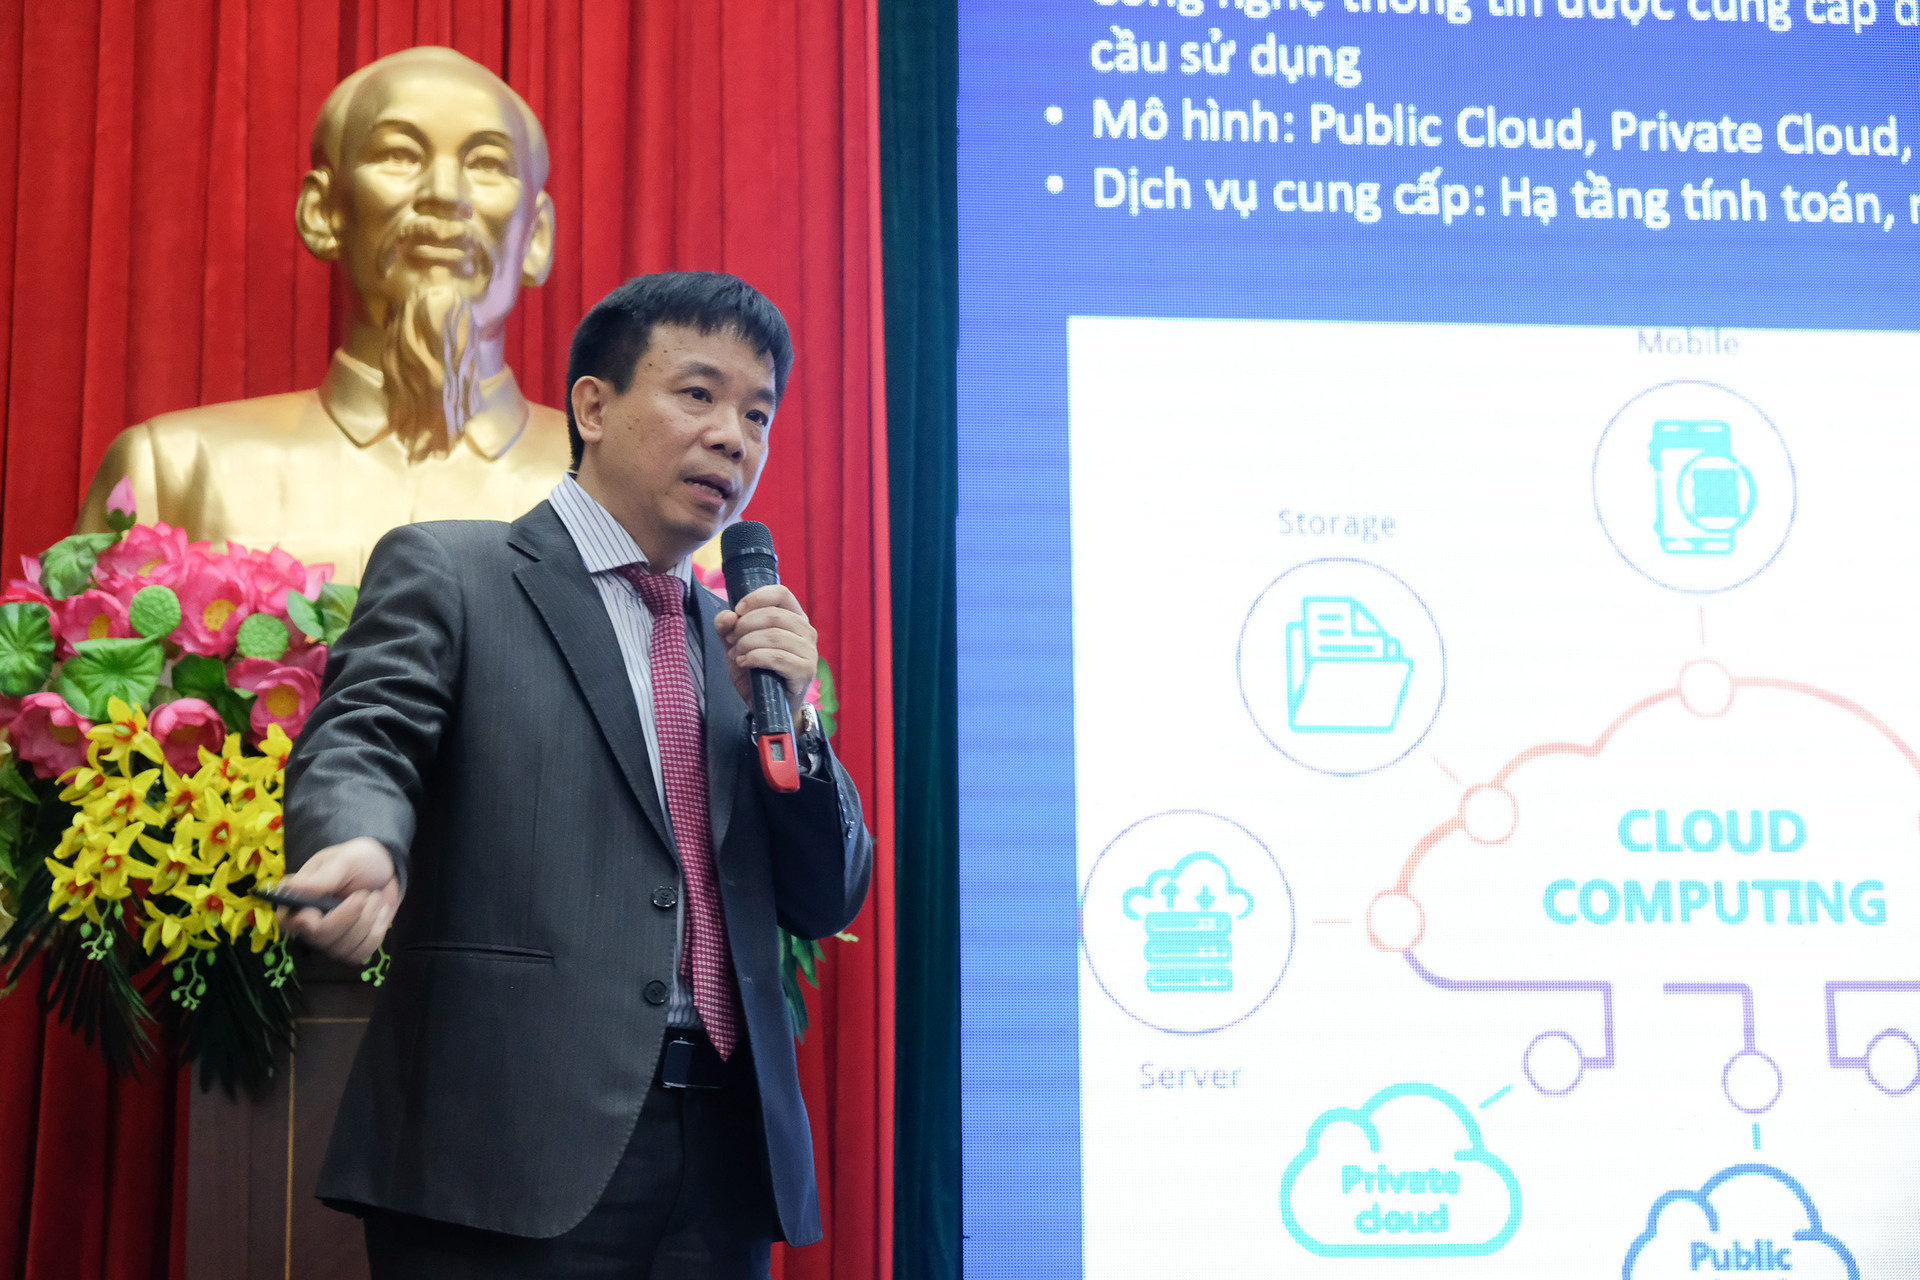 Ông Đào Gia Hạnh, Phó Giám đốc Công nghệ FPT IS, đã đặt vấn đề và thảo luận tại sự kiện về các xu hướng công nghệ, lợi ích và cách ứng dụng cho hoạt động chuyển đổi số của tỉnh Bắc Giang.